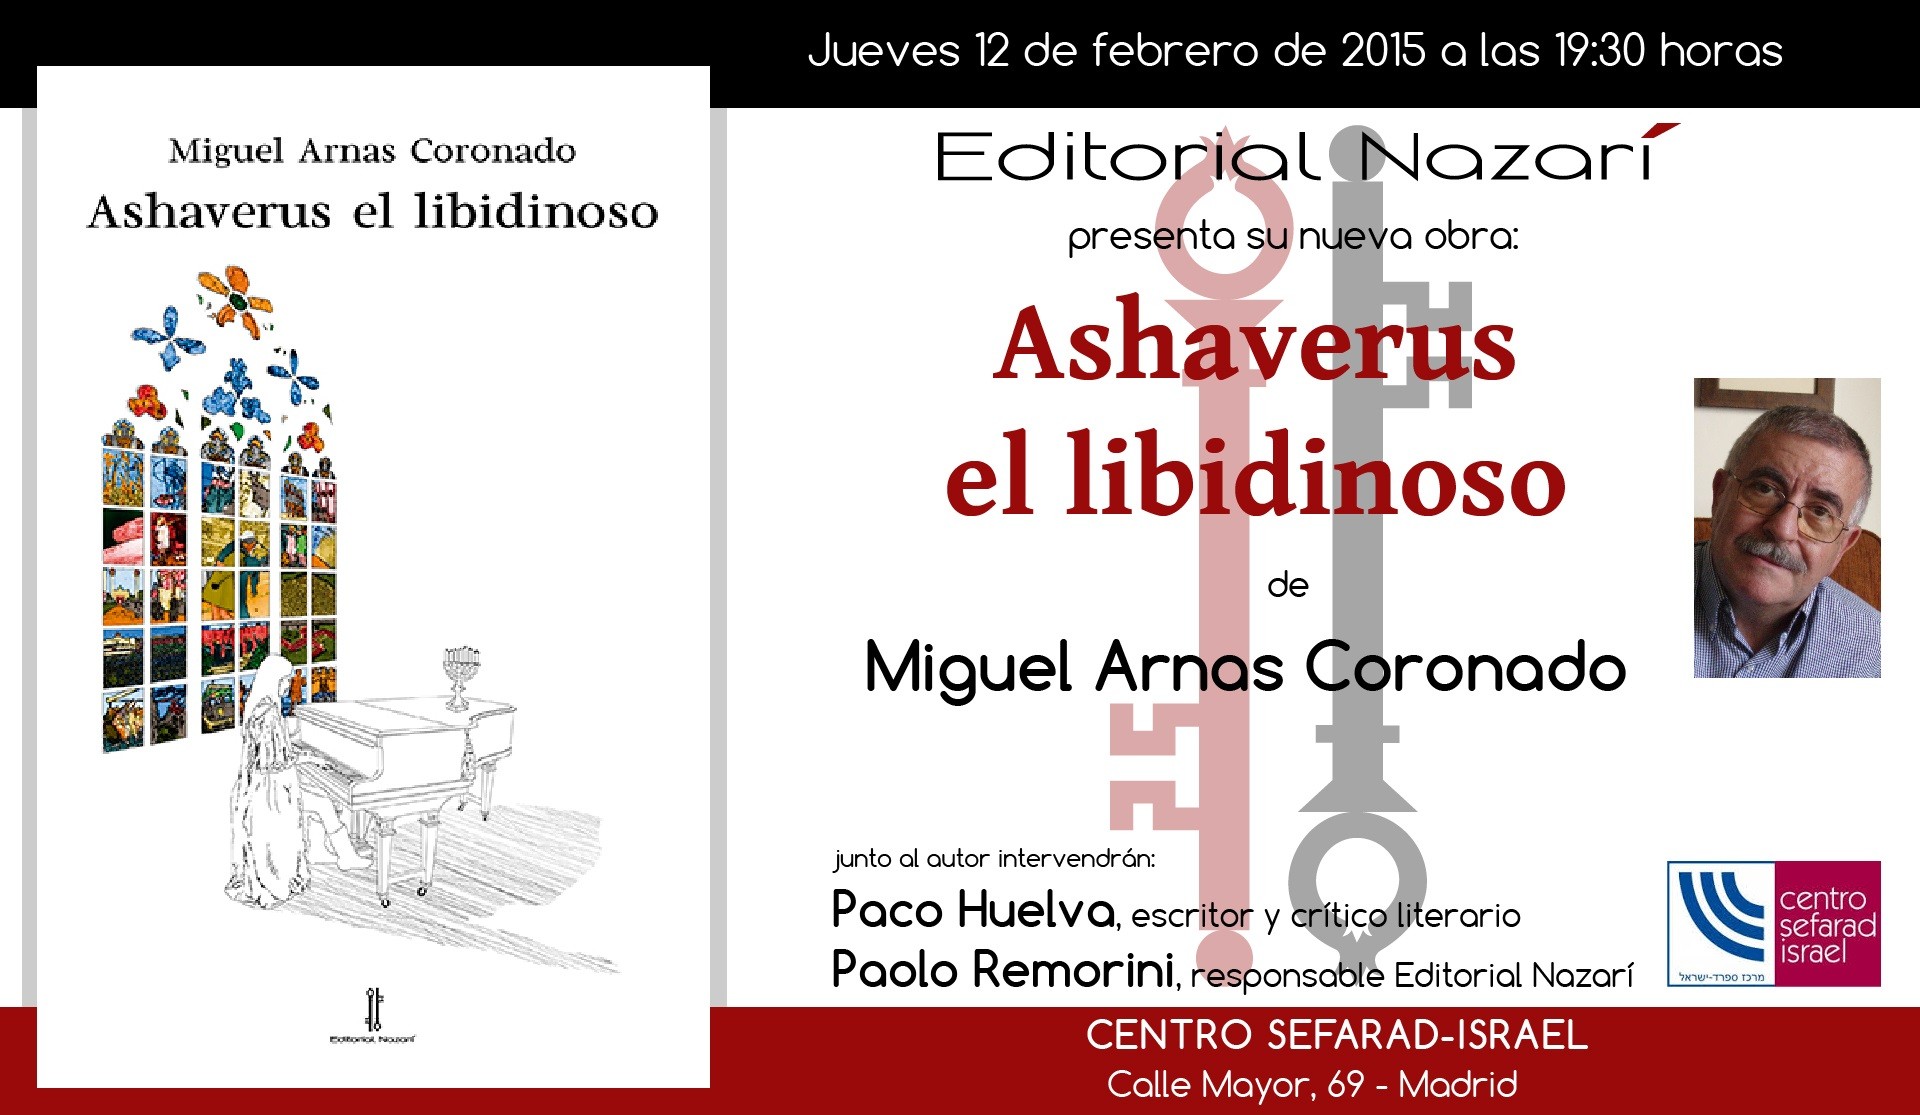 ashaverus-el-libidinoso-invitacion-madrid-12-02-2015.jpg